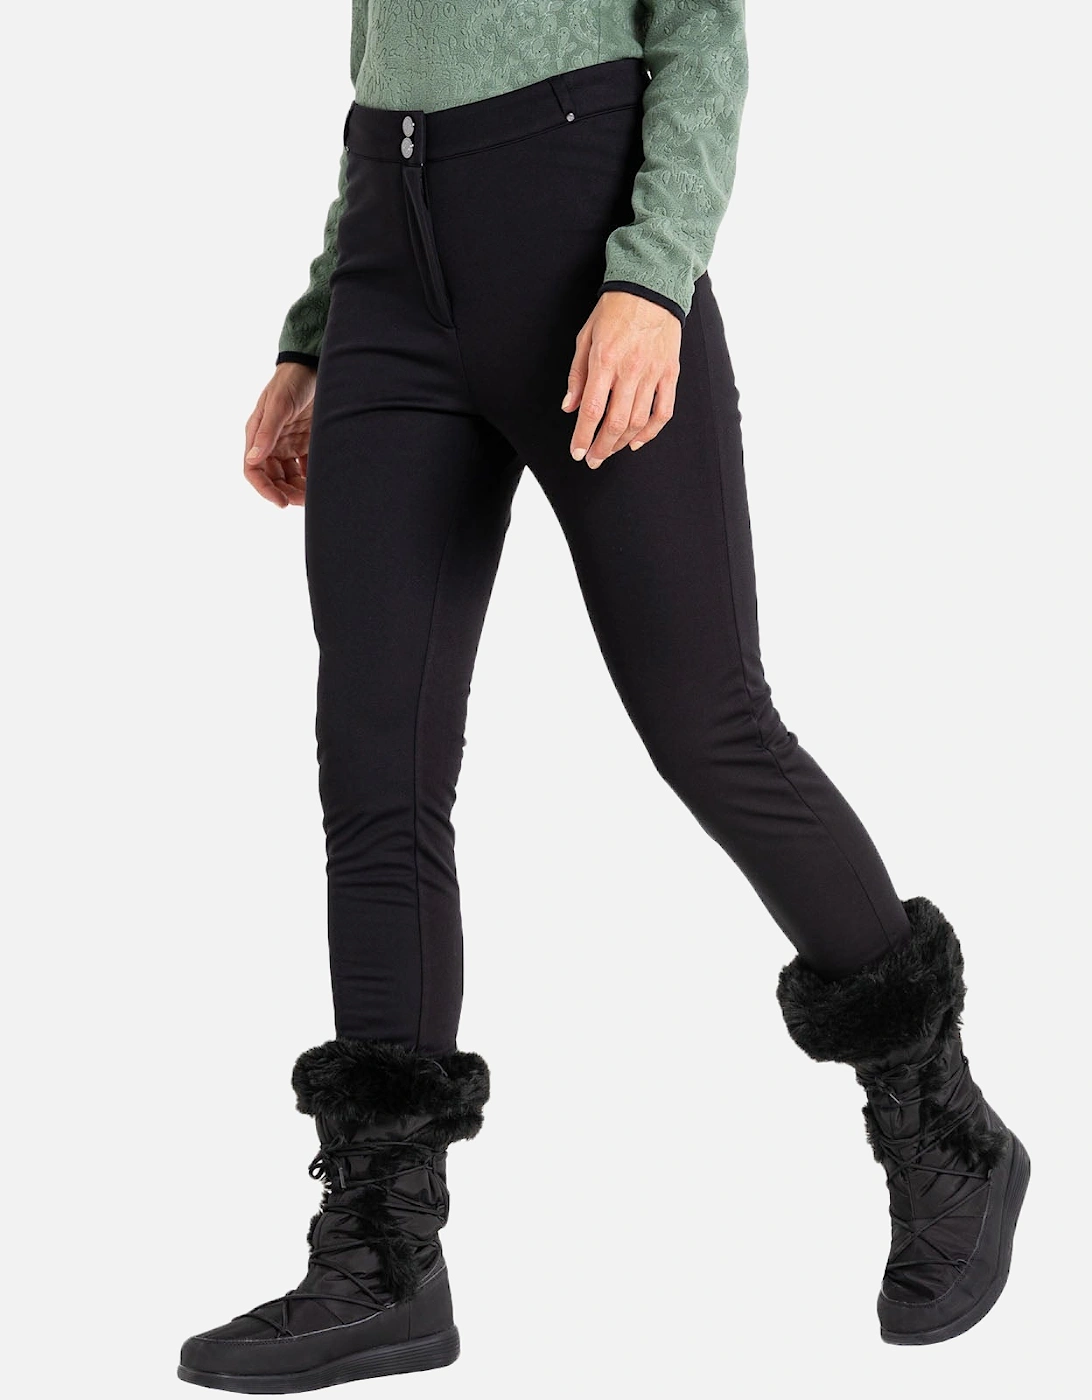 Womens Sleek II Waterproof Ski Trousers - Black, 5 of 4